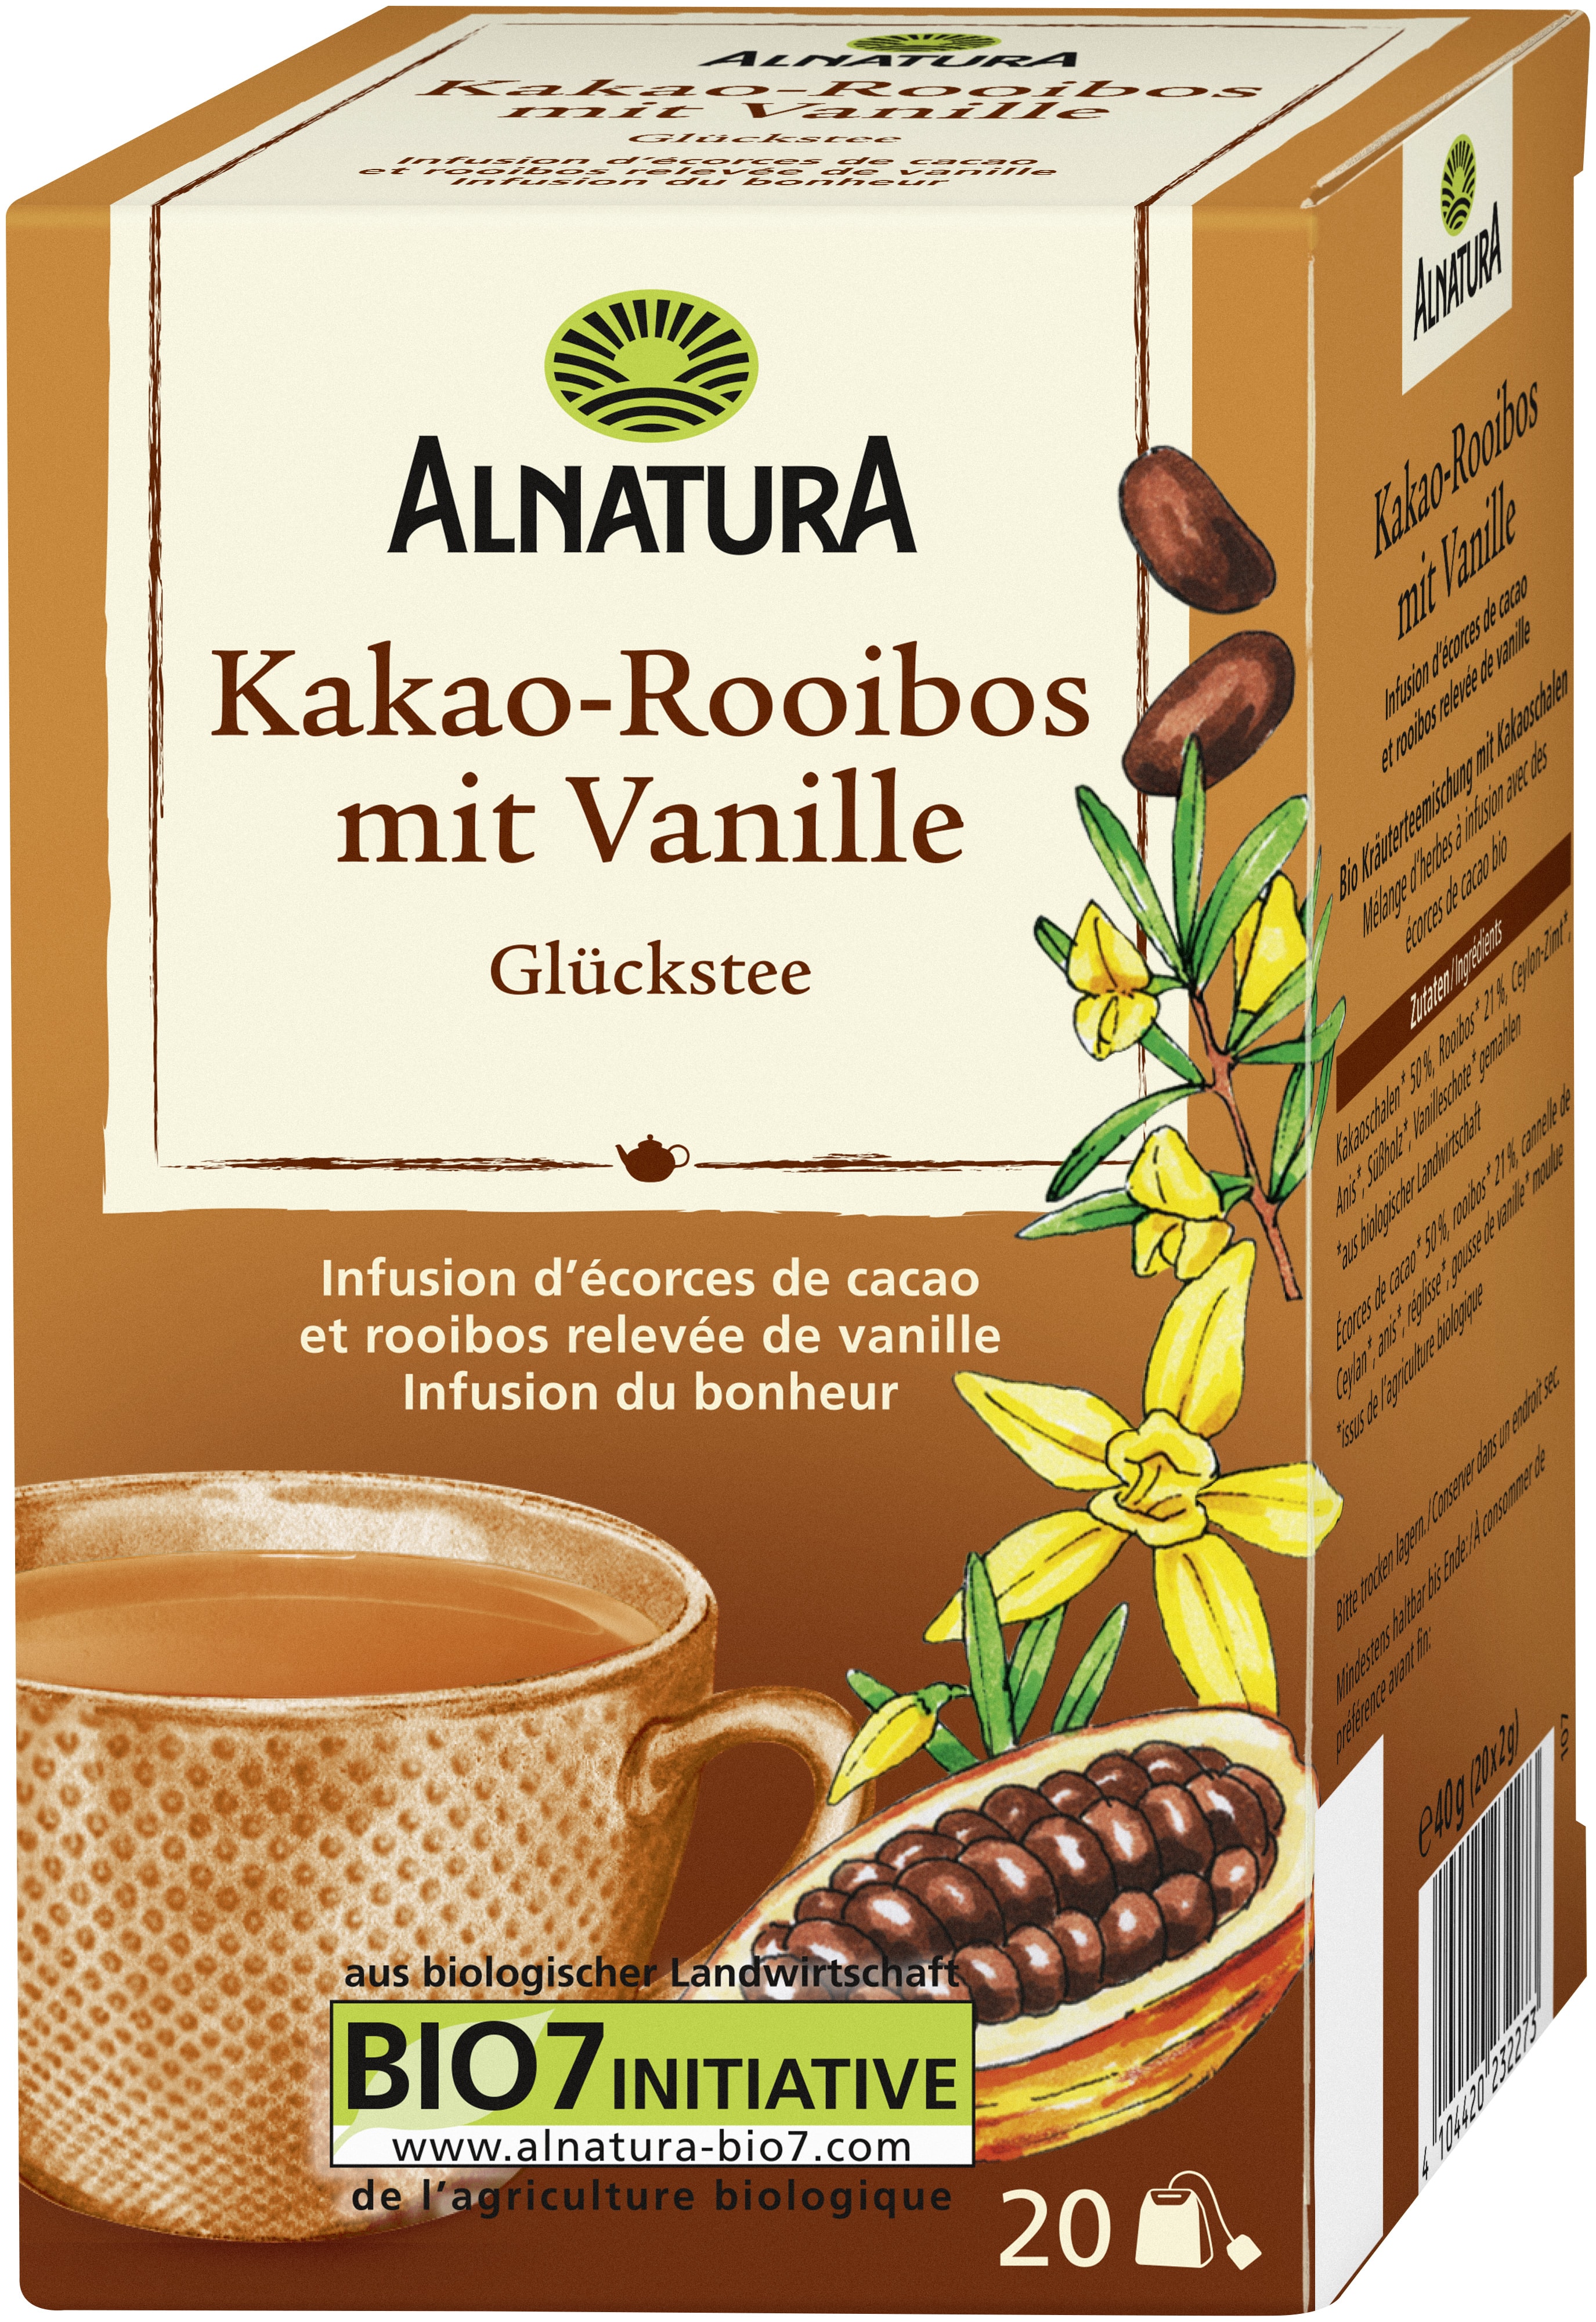 Kakao-Rooibos mit Vanille, 20 Beutel (40 g) in Bio-Qualität von Alnatura